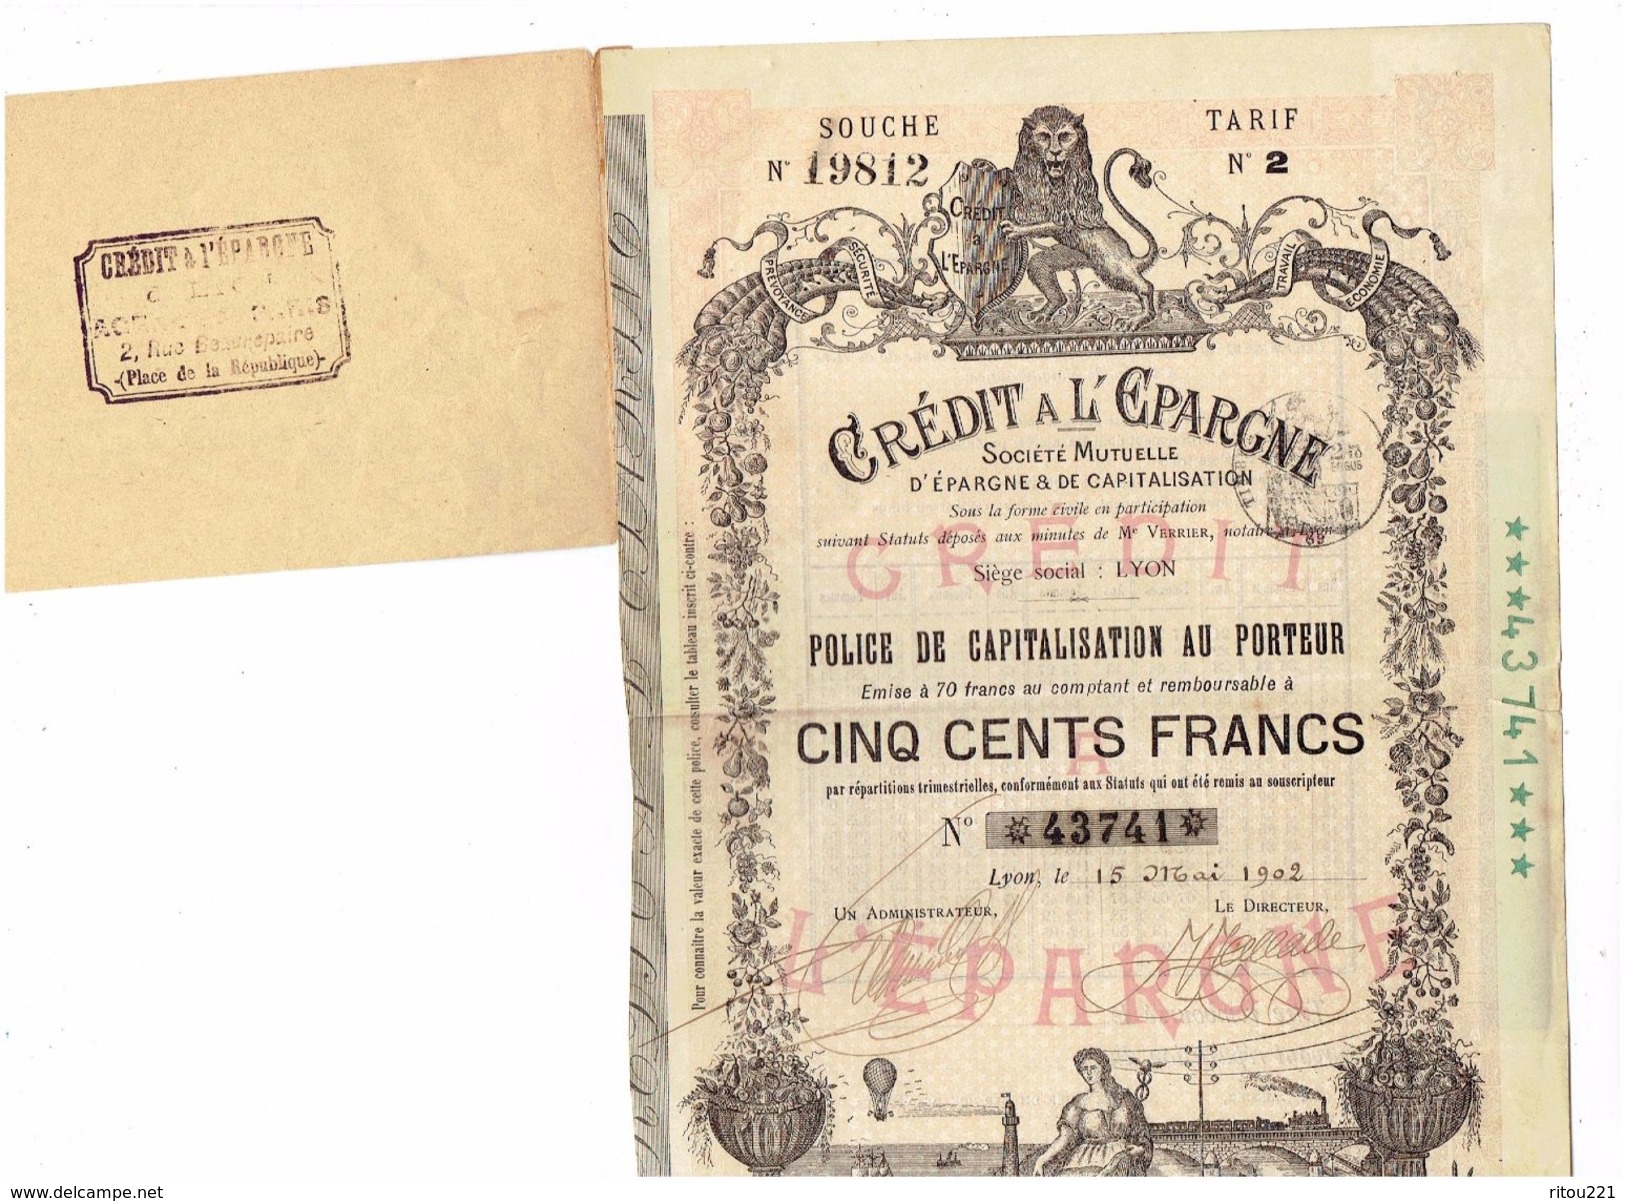 ACTION ILLUSTREE - CRÉDIT A L'EPARGNE - POLICE DE CAPITALISATION 500 Frs - 1902 - Banque & Assurance